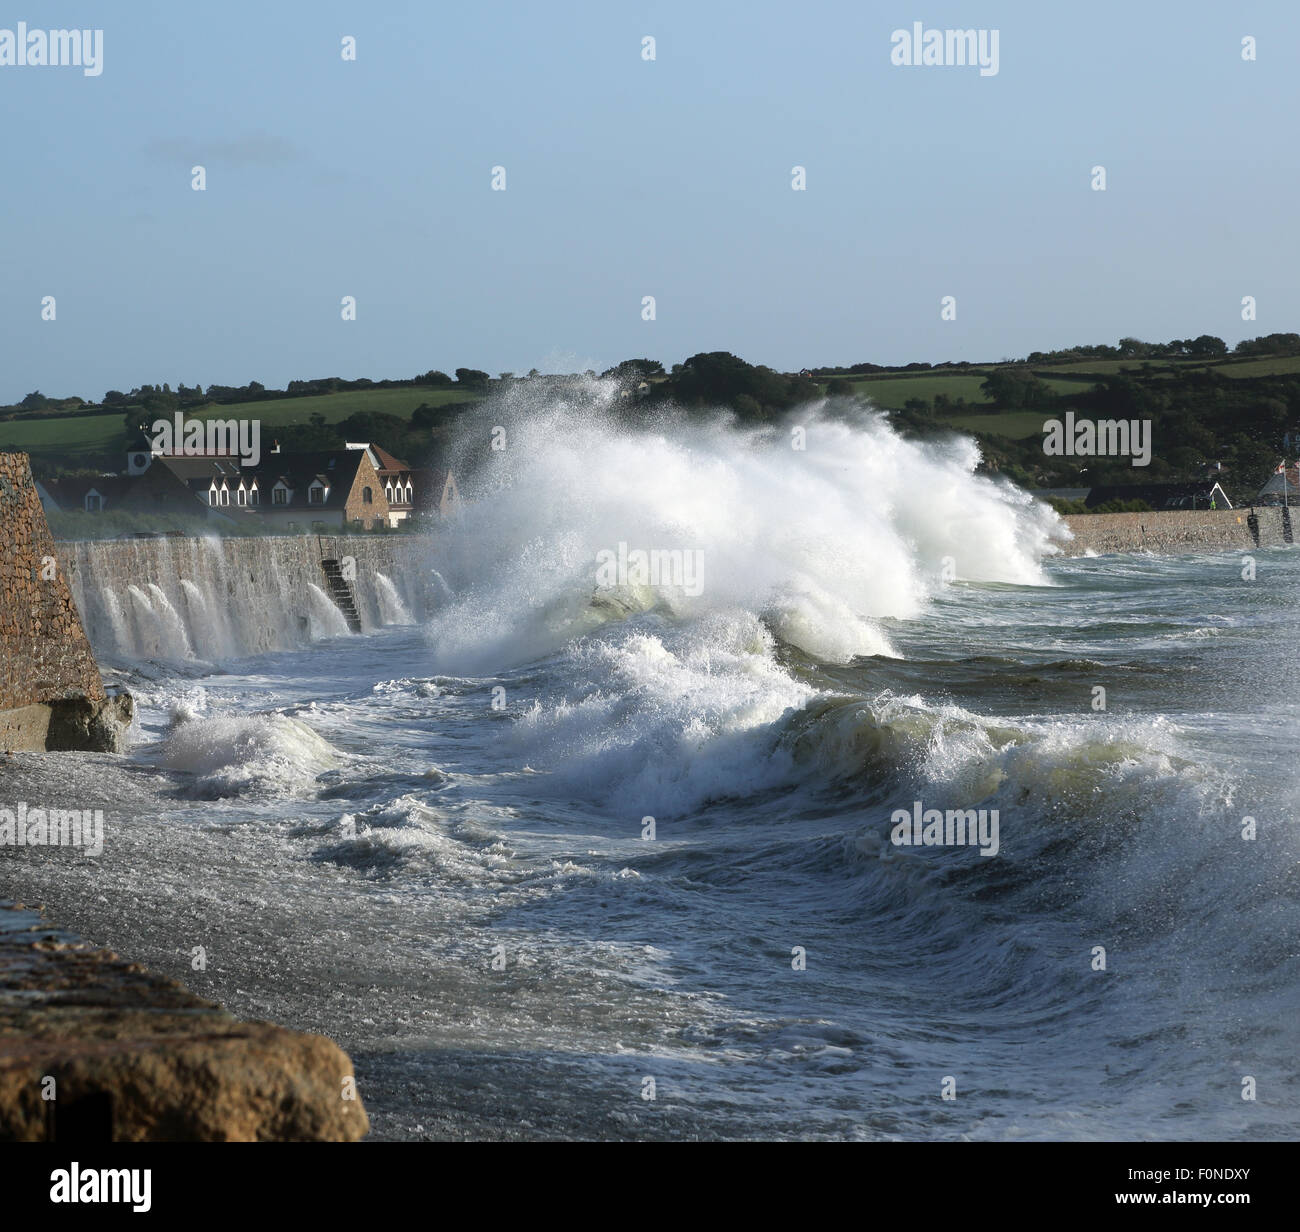 Onde che si infrangono contro il muro a Vazon Bay, Guernsey in seguito ad una tempesta di mare. Foto Stock